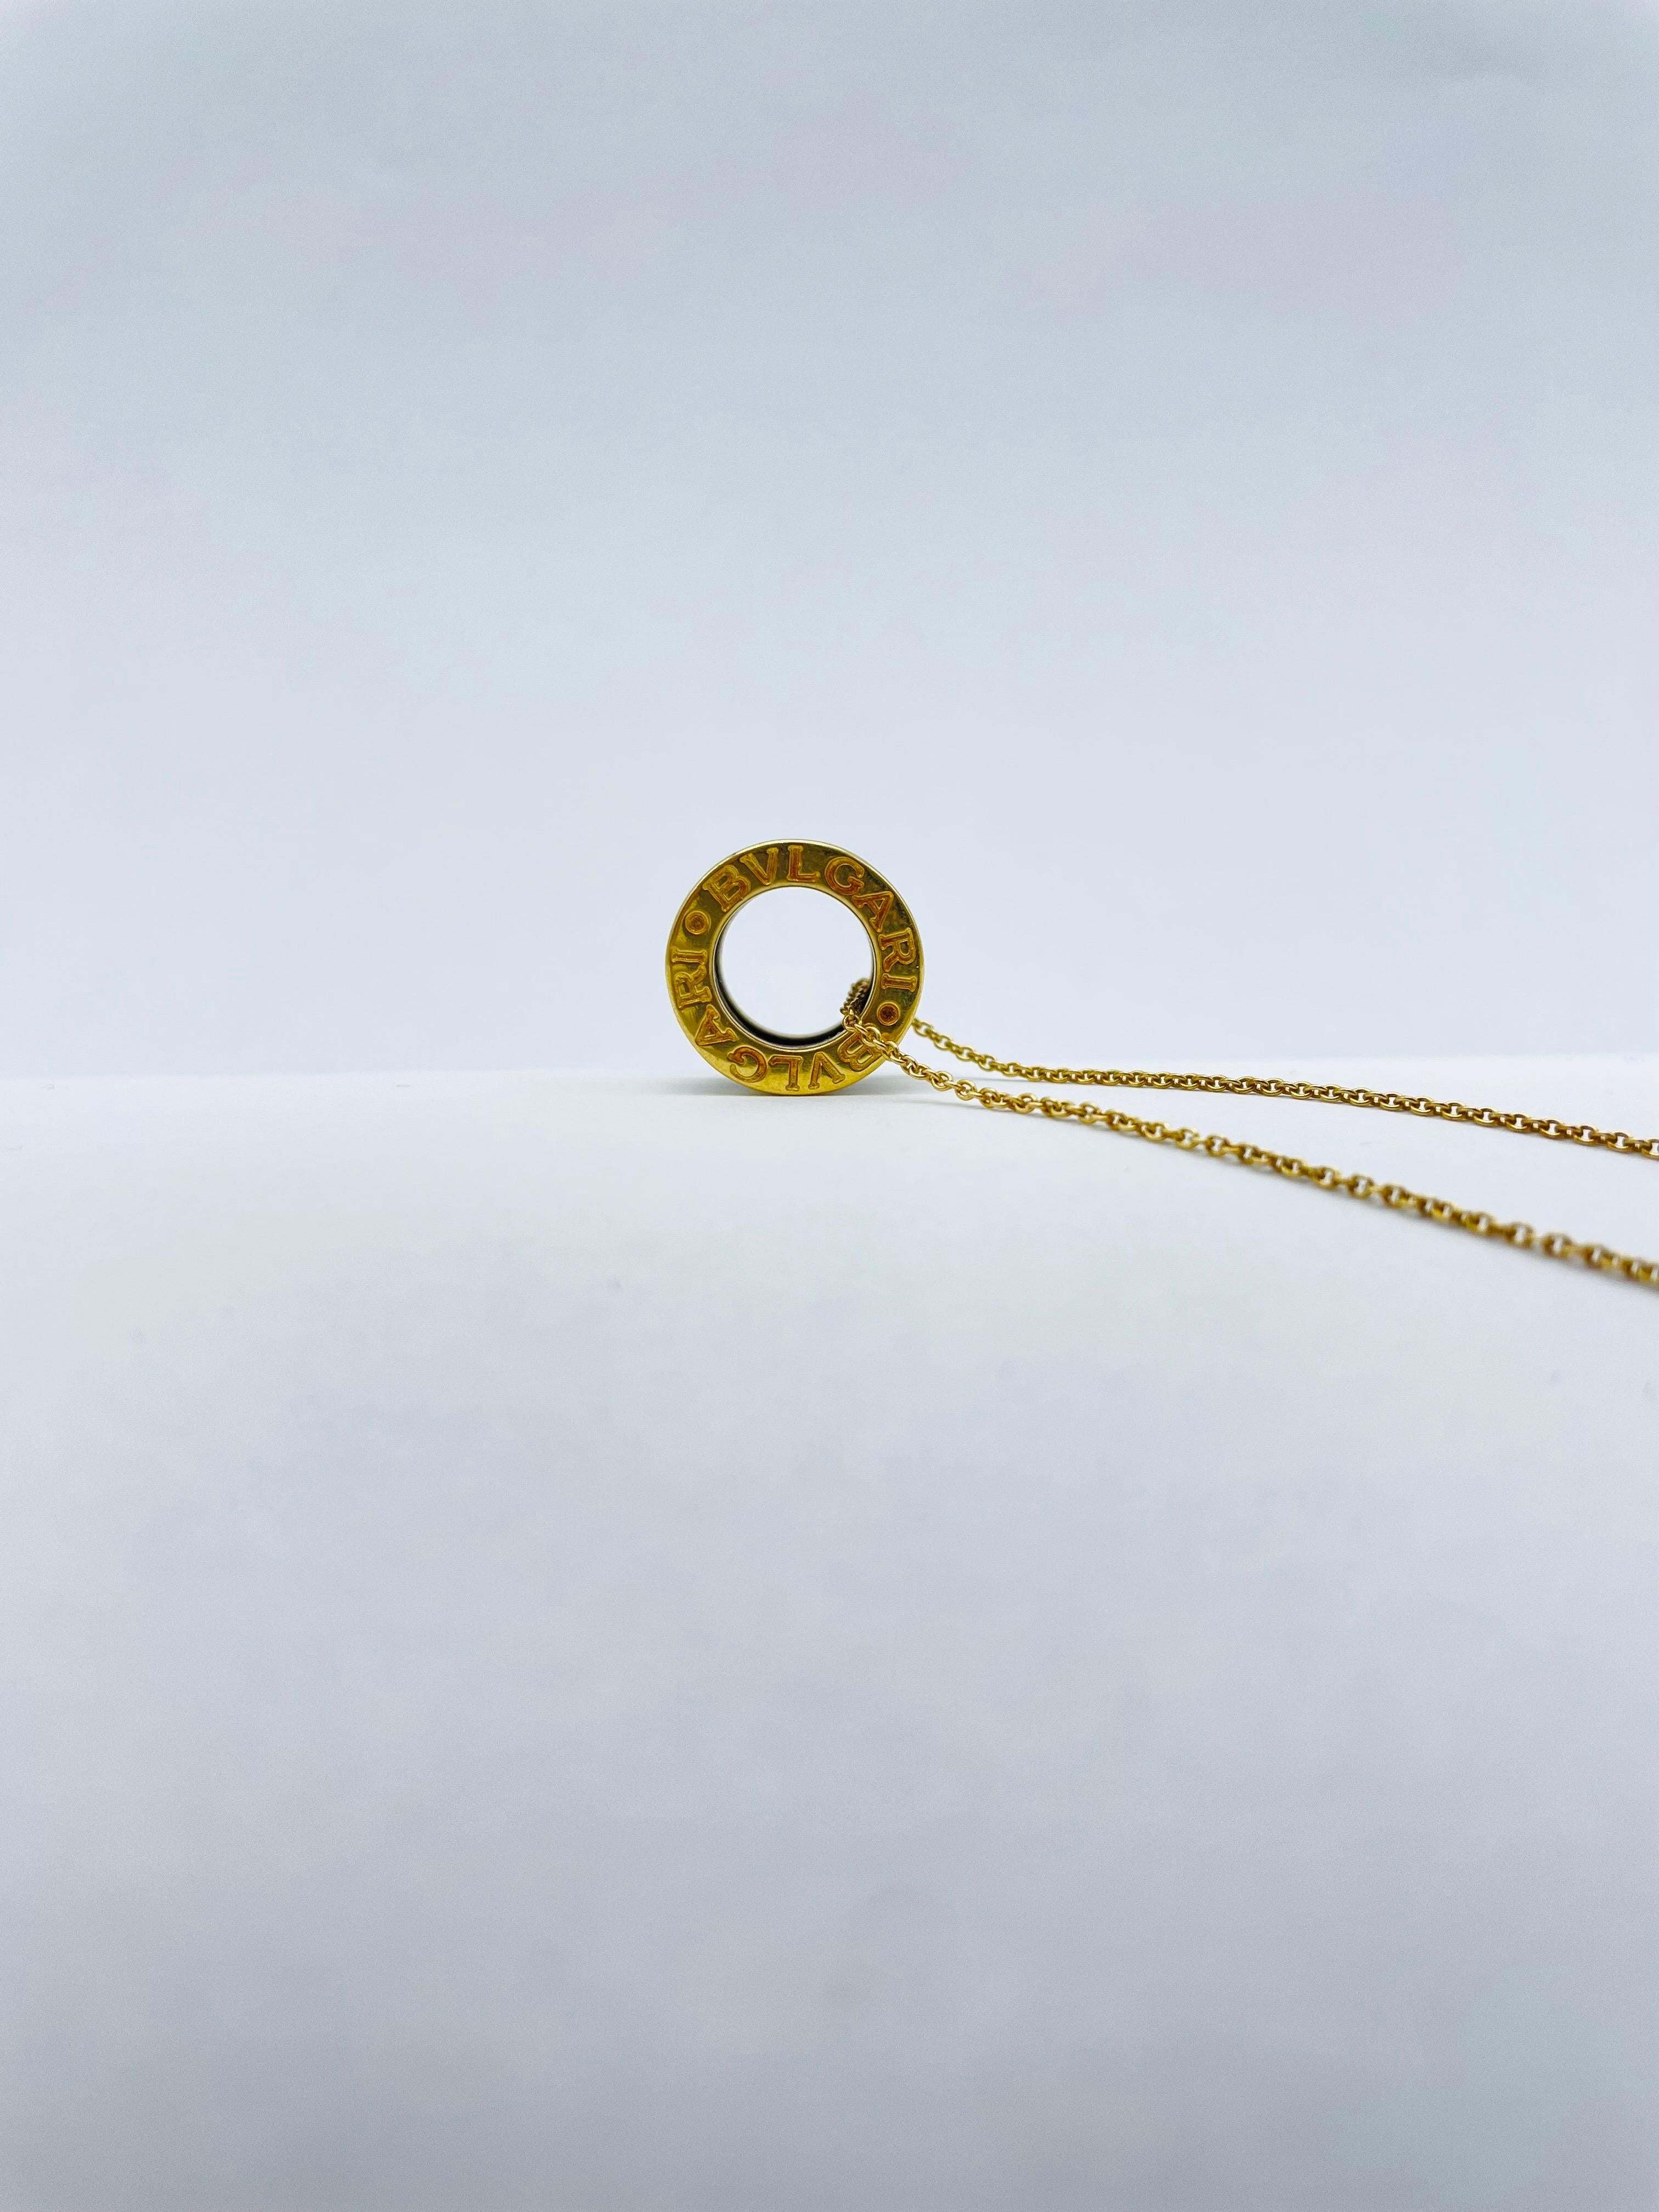 BVLGARI - BULGARI B.zero1 necklace in 18k yellow gold, set with diamonds

The 